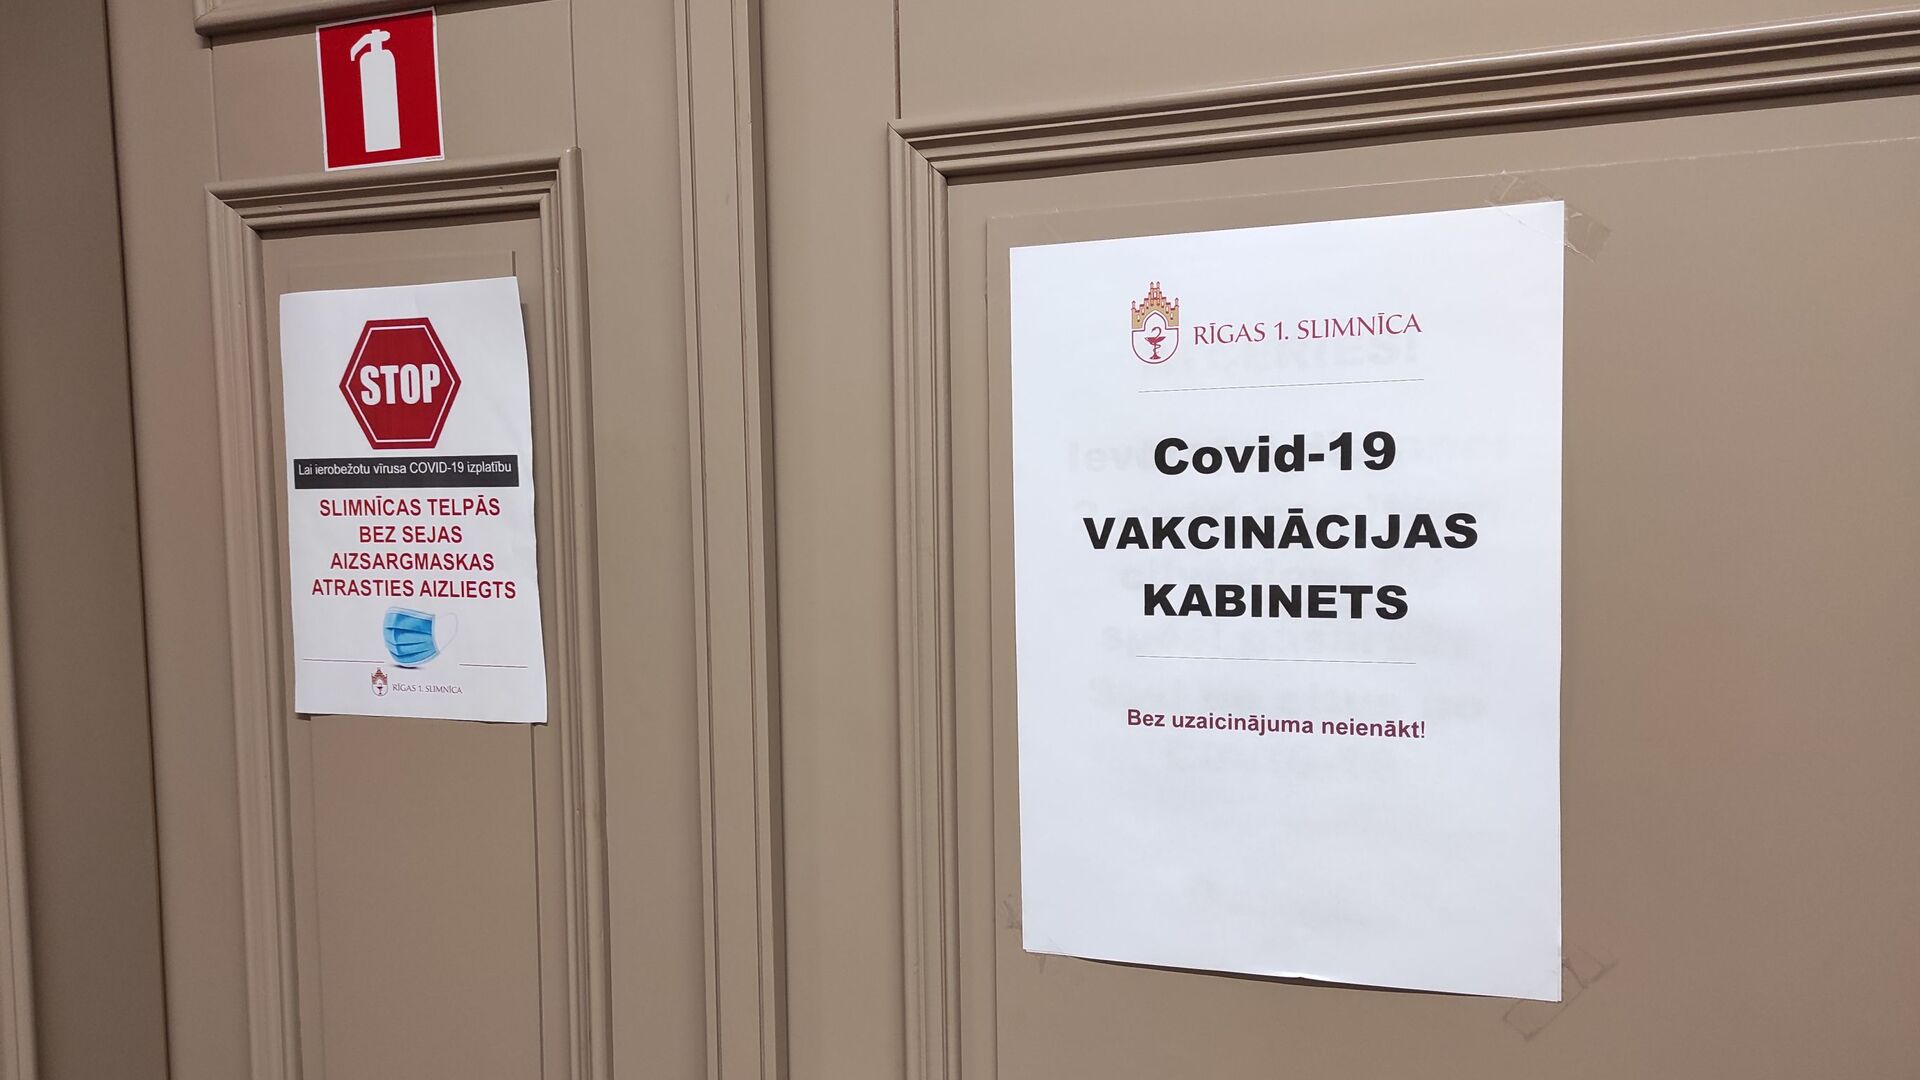 Кабинет вакцинации в Первой городской больнице Риги  - Sputnik Латвия, 1920, 25.03.2021